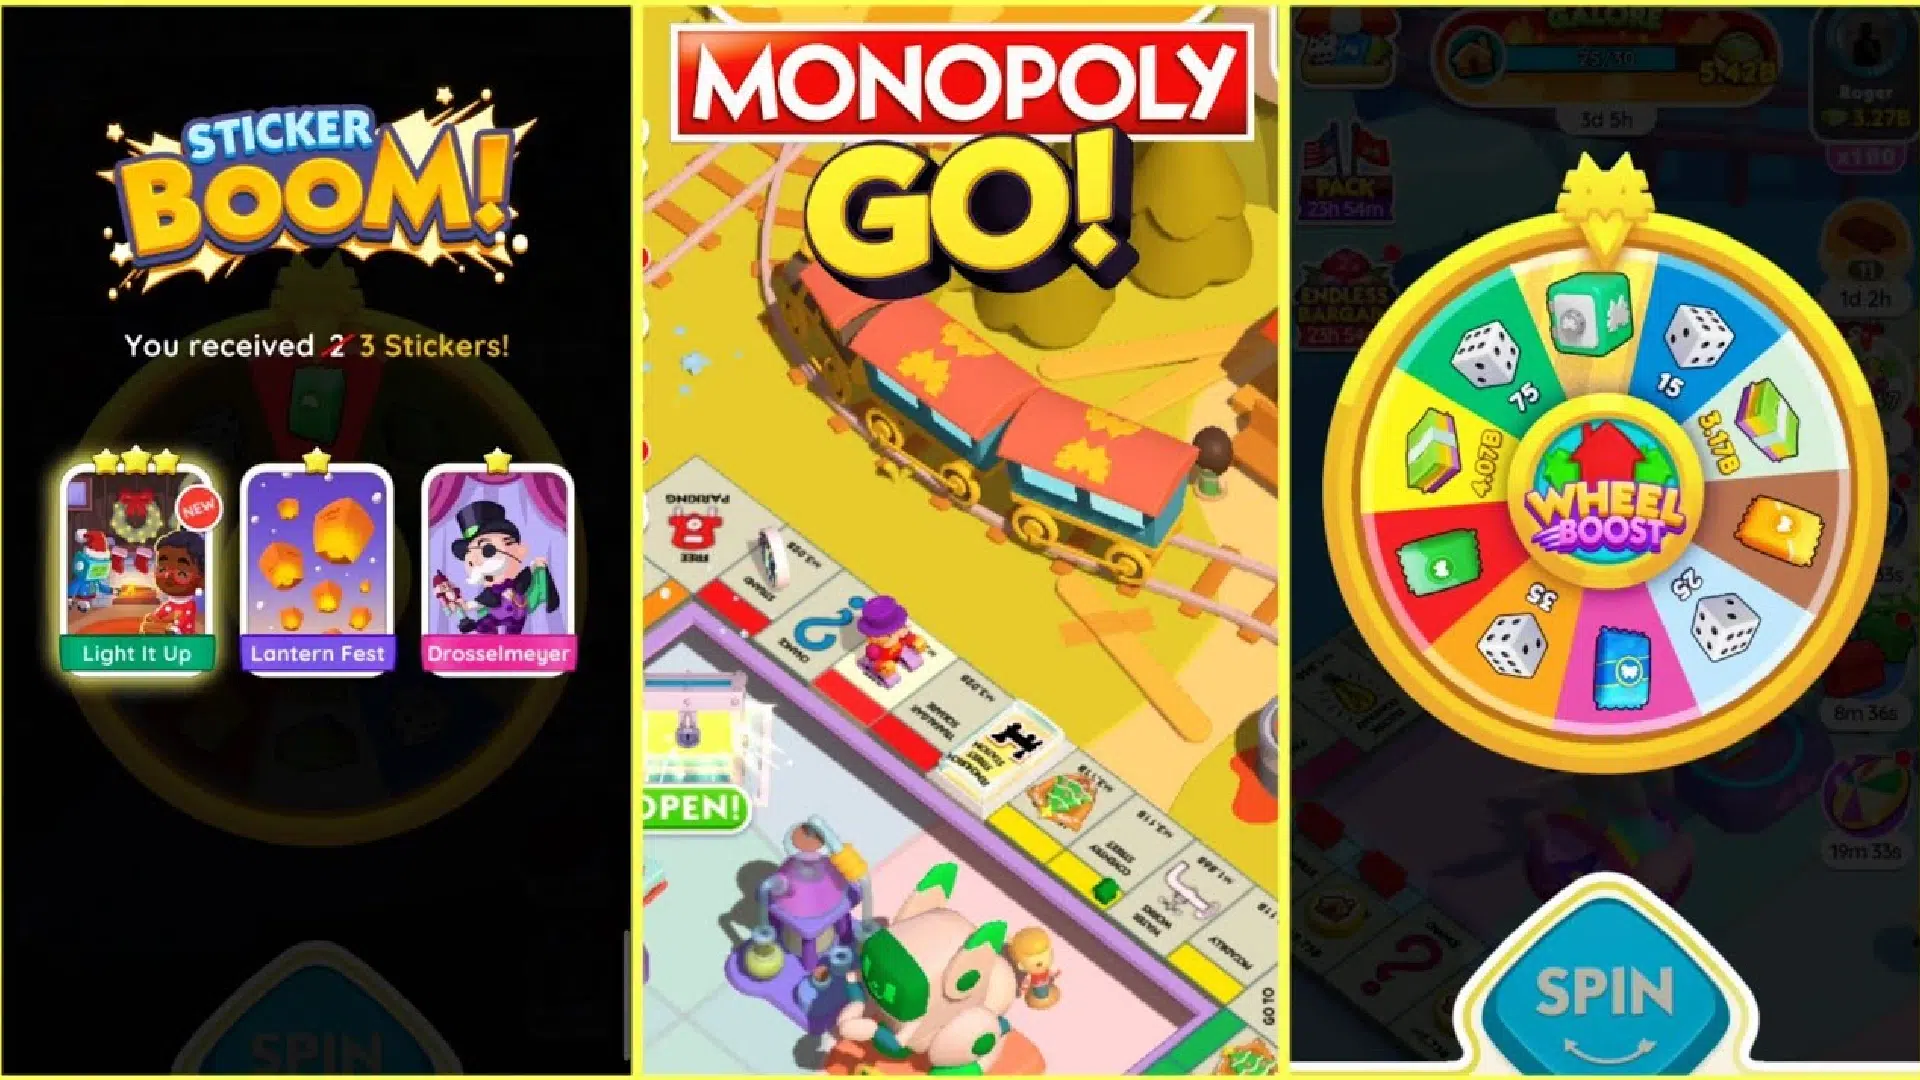 Rueda Set de Color en Monopoly Go